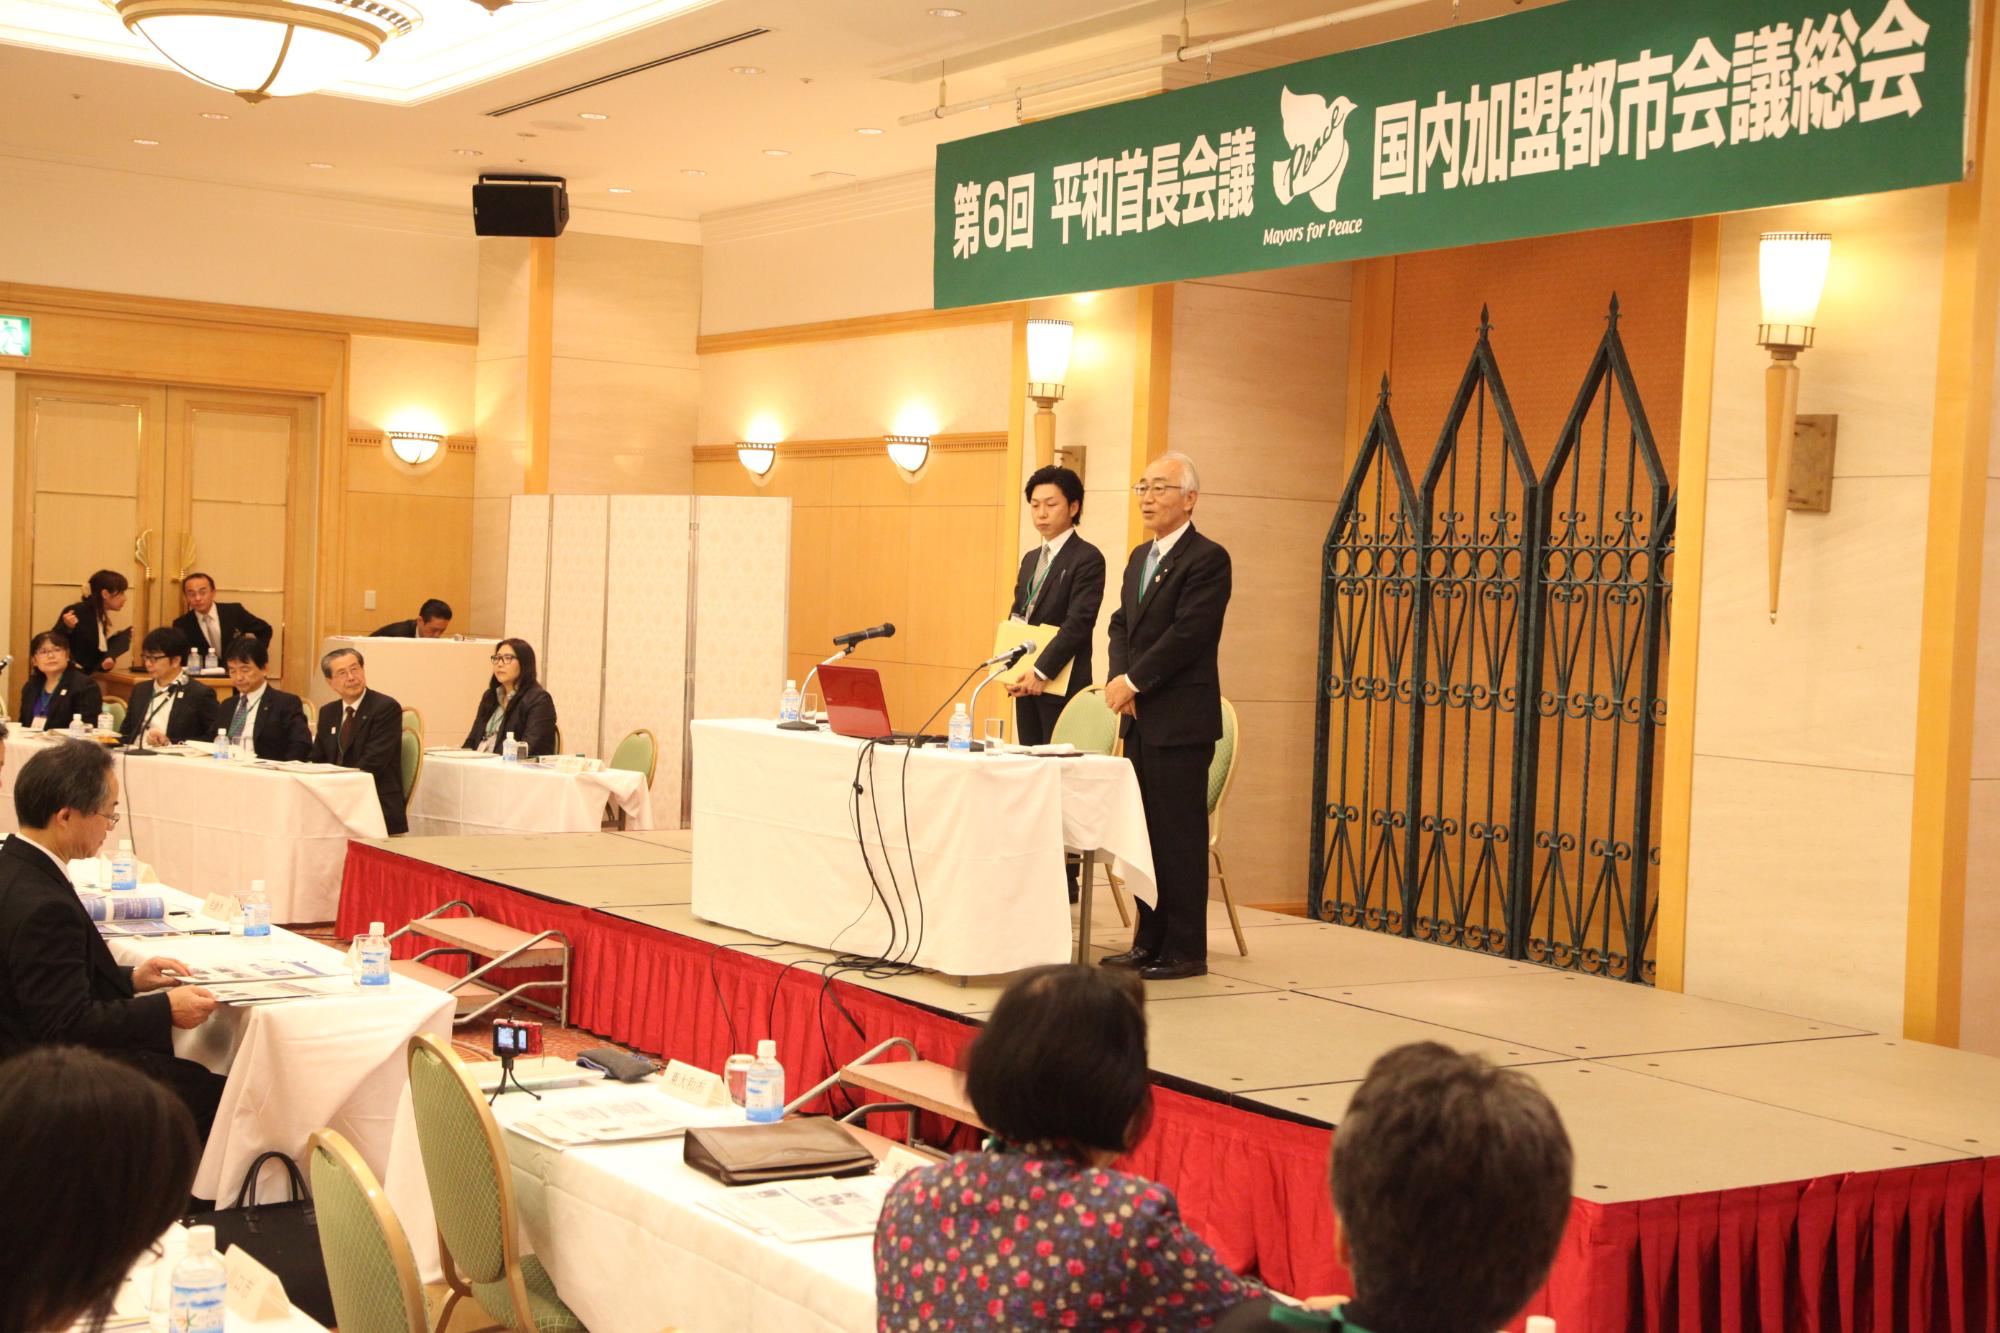 参加者が注目する中、尾崎保夫東大和市長と、男性が、議席に立っている写真